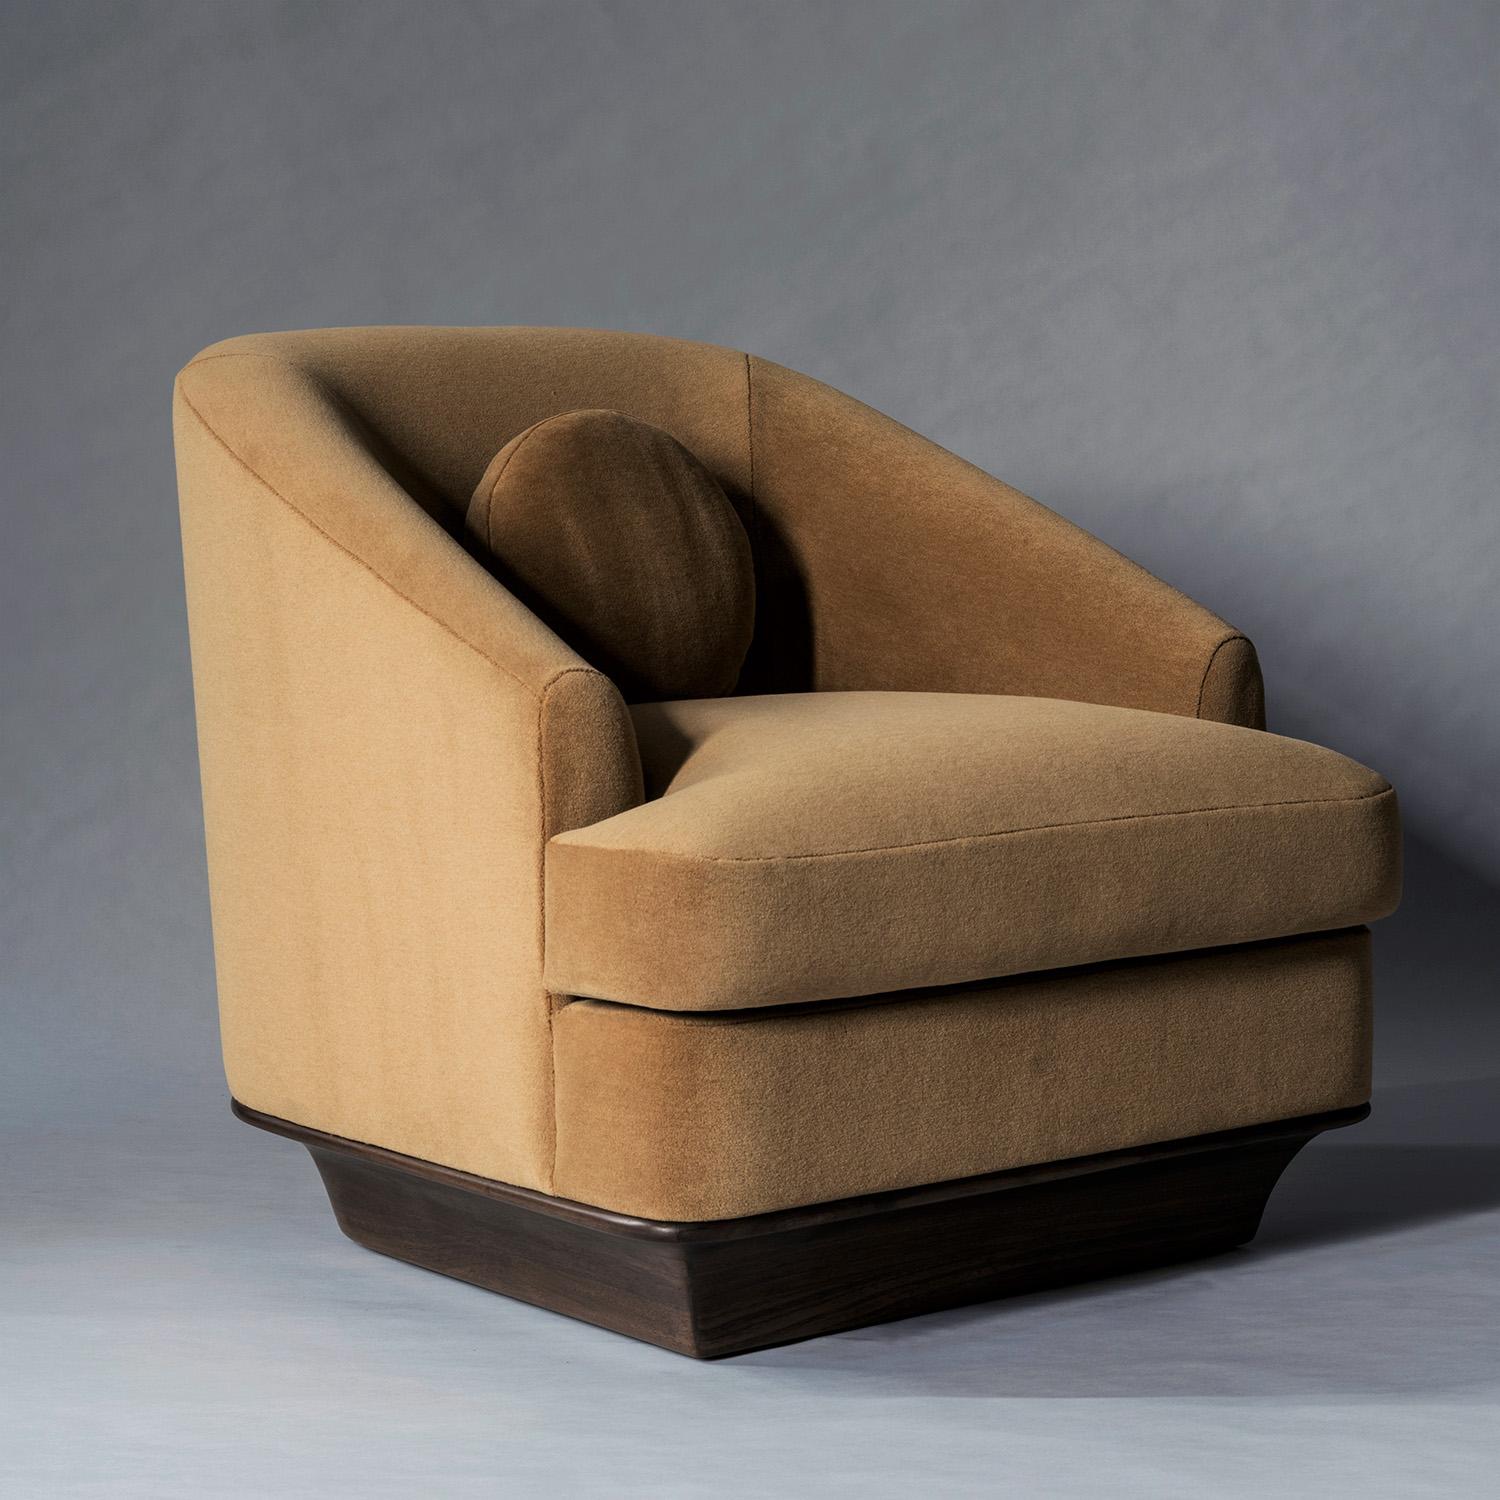 Der Nico Lounge Chair verbindet schöne Proportionen mit zeitlosen MATERIALEN und einem hohen Maß an Komfort. Gerade Linien werden durch geschwungene Kanten und schräge Arme abgemildert, so dass ein durchdachtes Gleichgewicht zwischen harten und